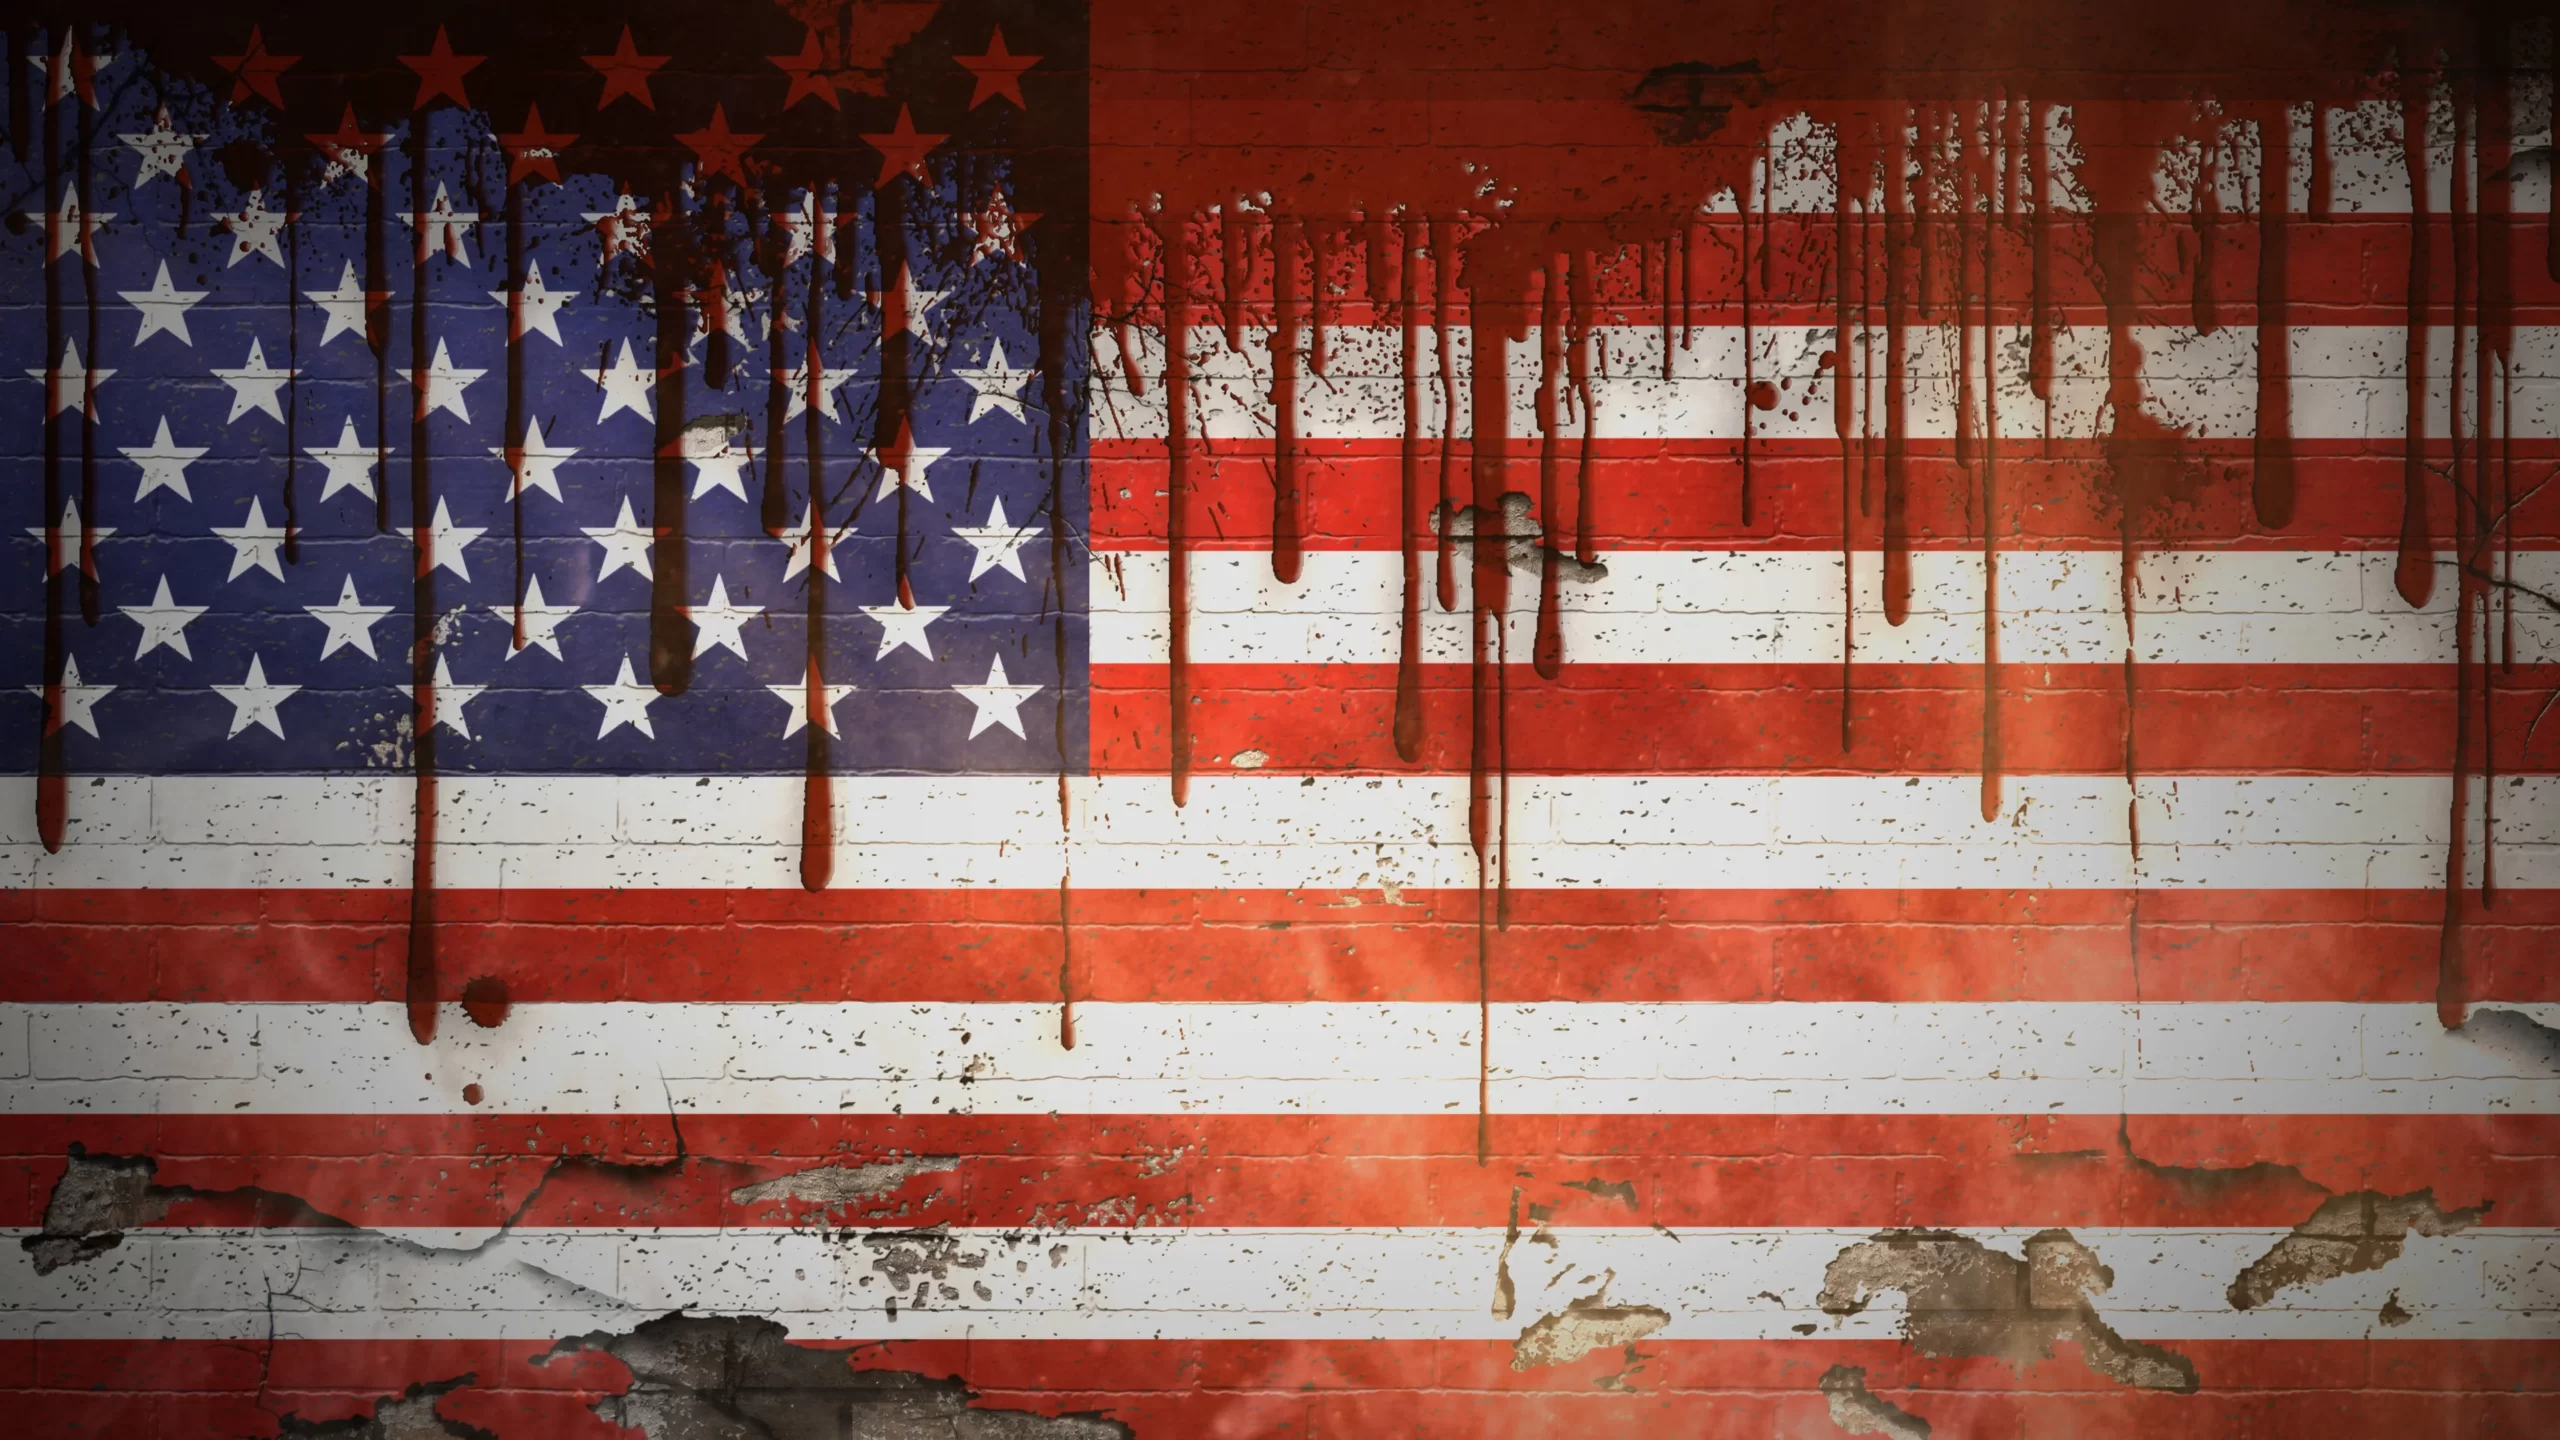 https://laresistenciaradio.com/wp-content/uploads/2022/09/USA-flag-blood-scaled.webp